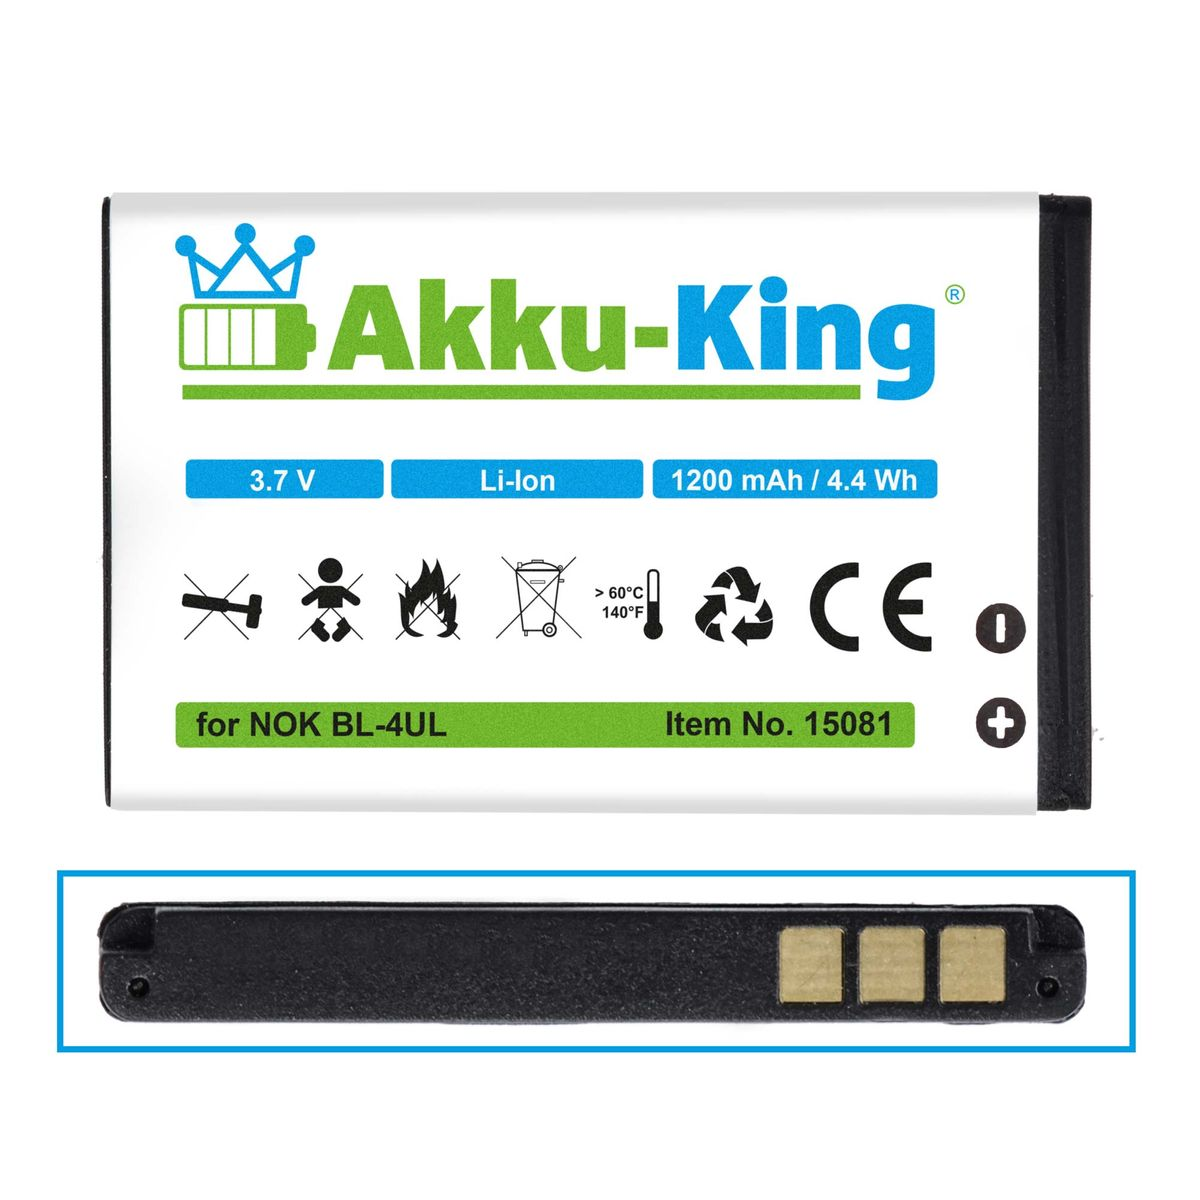 1200mAh Handy-Akku, AKKU-KING Akku Li-Ion mit Nokia kompatibel Volt, BL-4UL 3.7